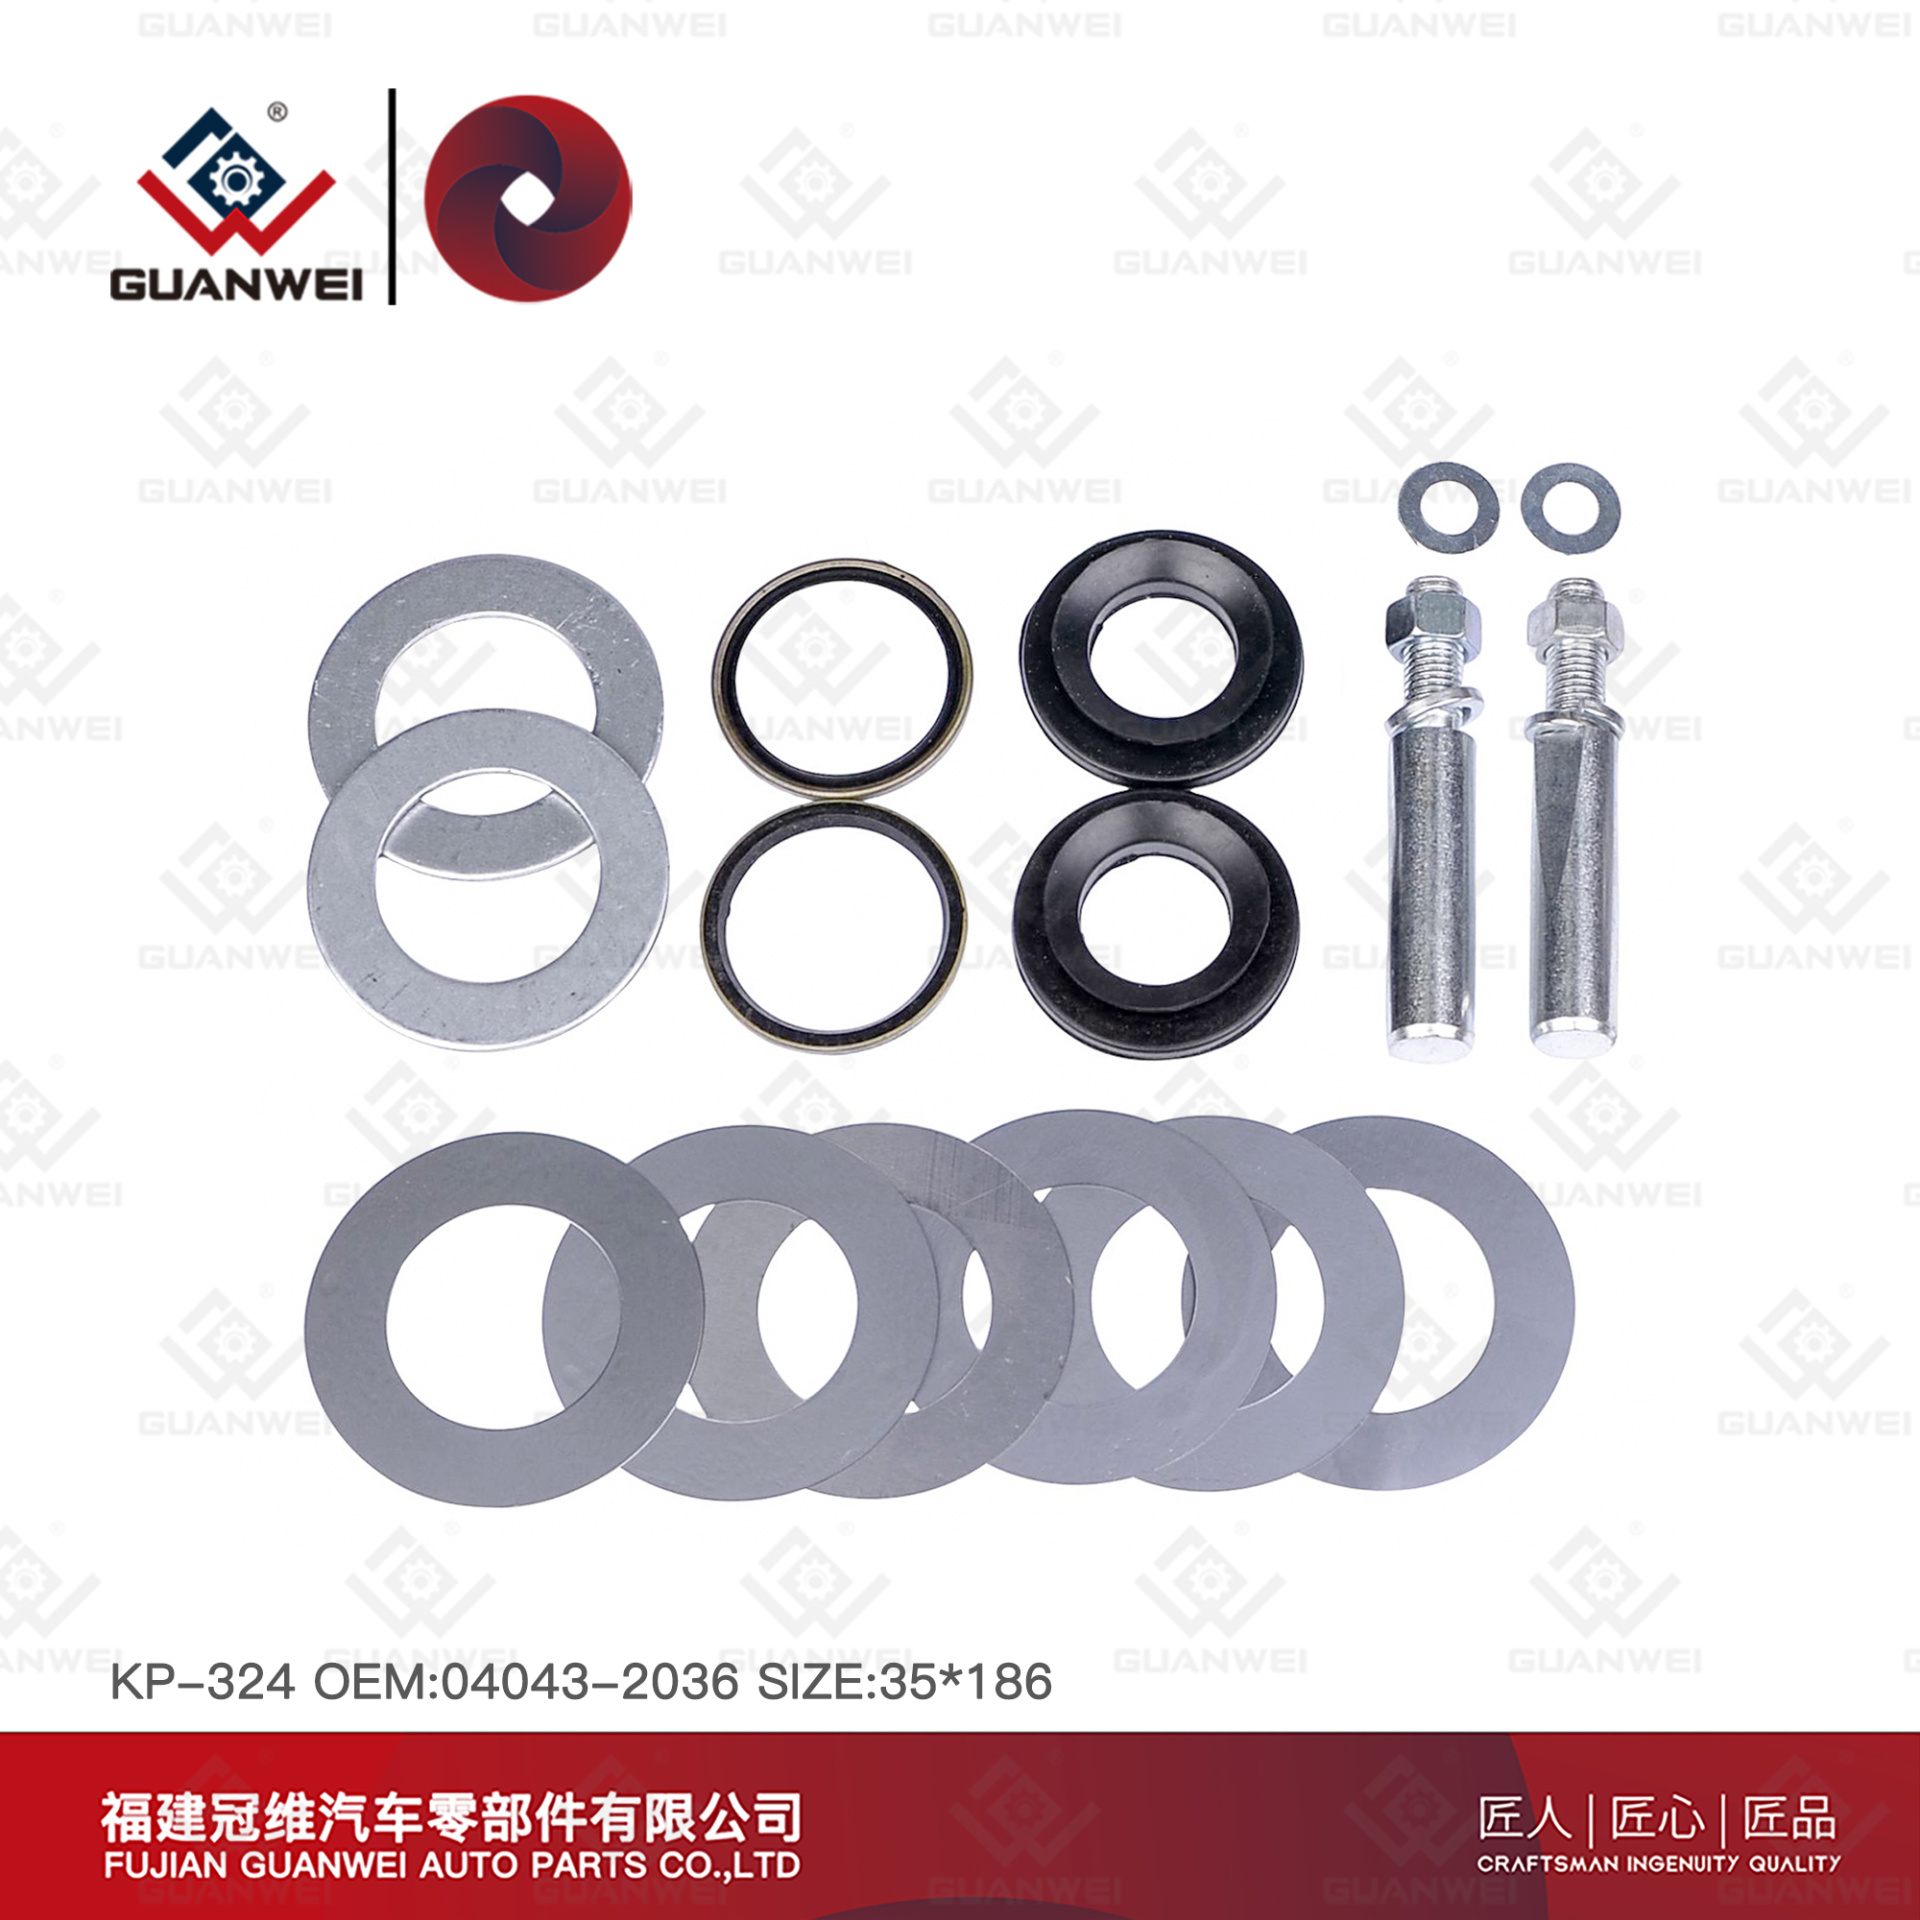 king pin repair kit KP-324 OEM:04043-2036 For HINO